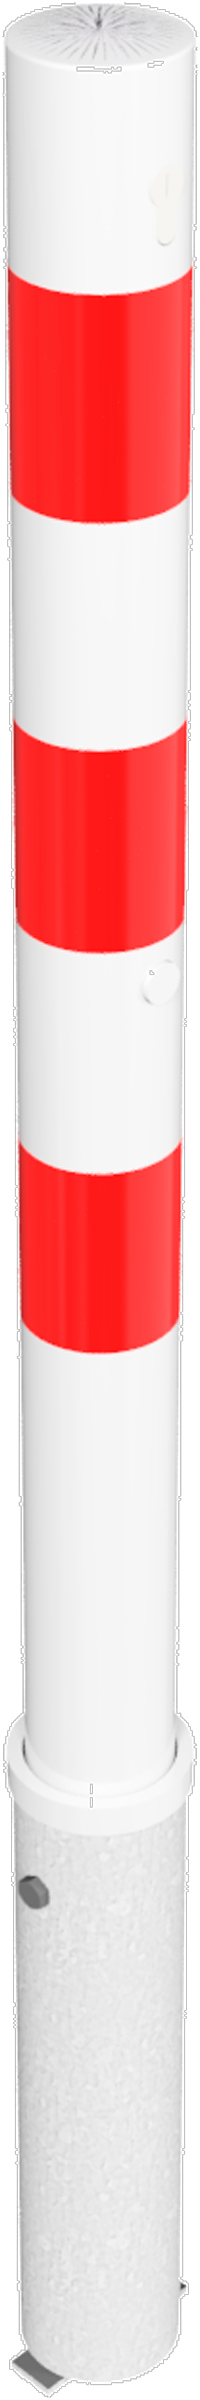 Schake Absperrpfosten HP Ø 76 mm weiß | rot